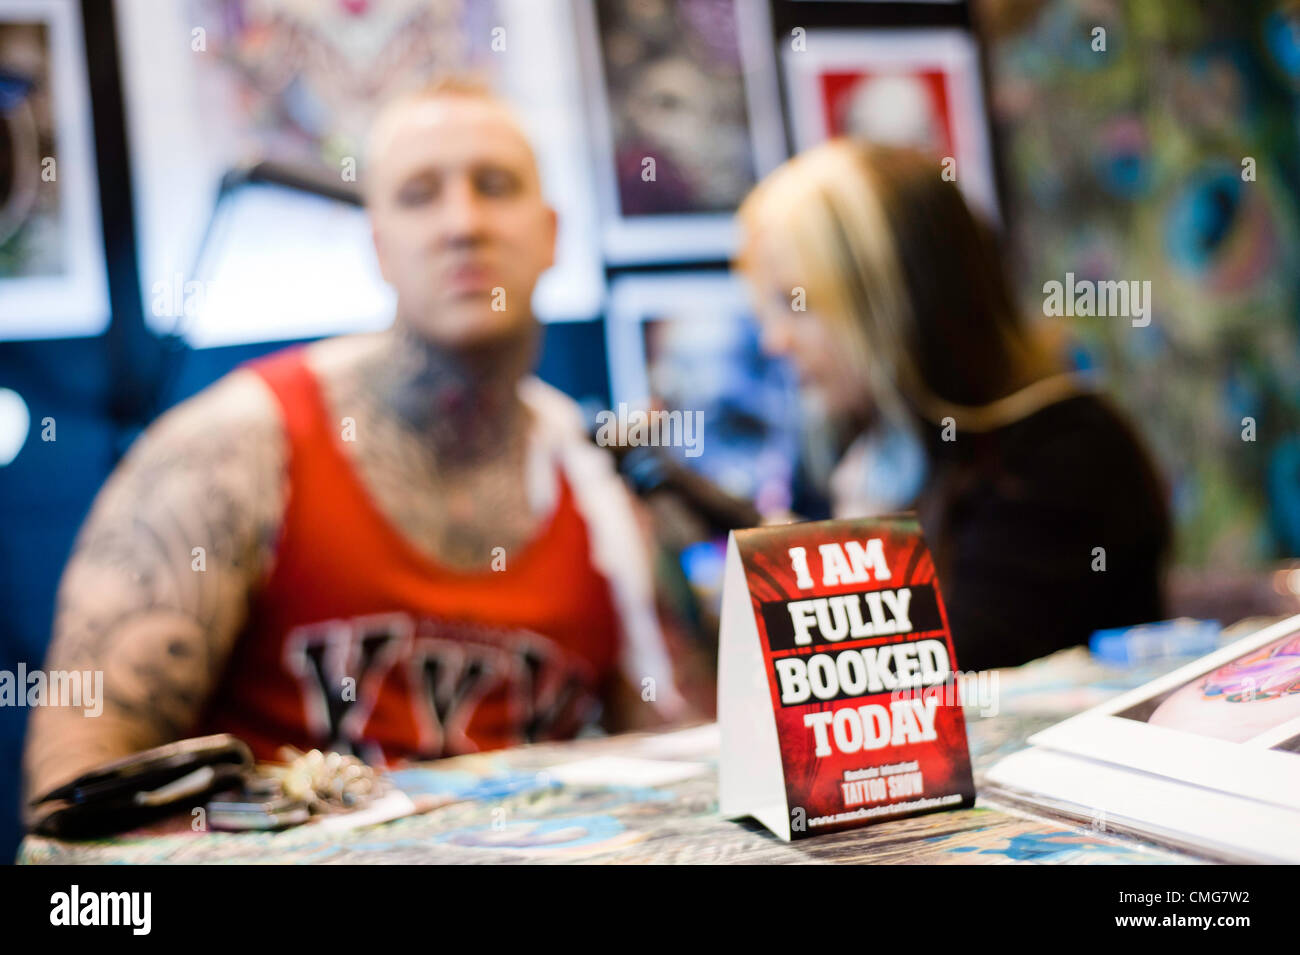 Manchester, UK - 4. August 2012: ein Schild mit der Aufschrift "Ich bin ausgebucht heute" auf dem Tisch von einem Künstler Tattoing Besucher während der Manchester-Tattoo-Show, eine der beliebtesten Konventionen des Vereinigten Königreichs tattoo Gemeinschaft. Stockfoto